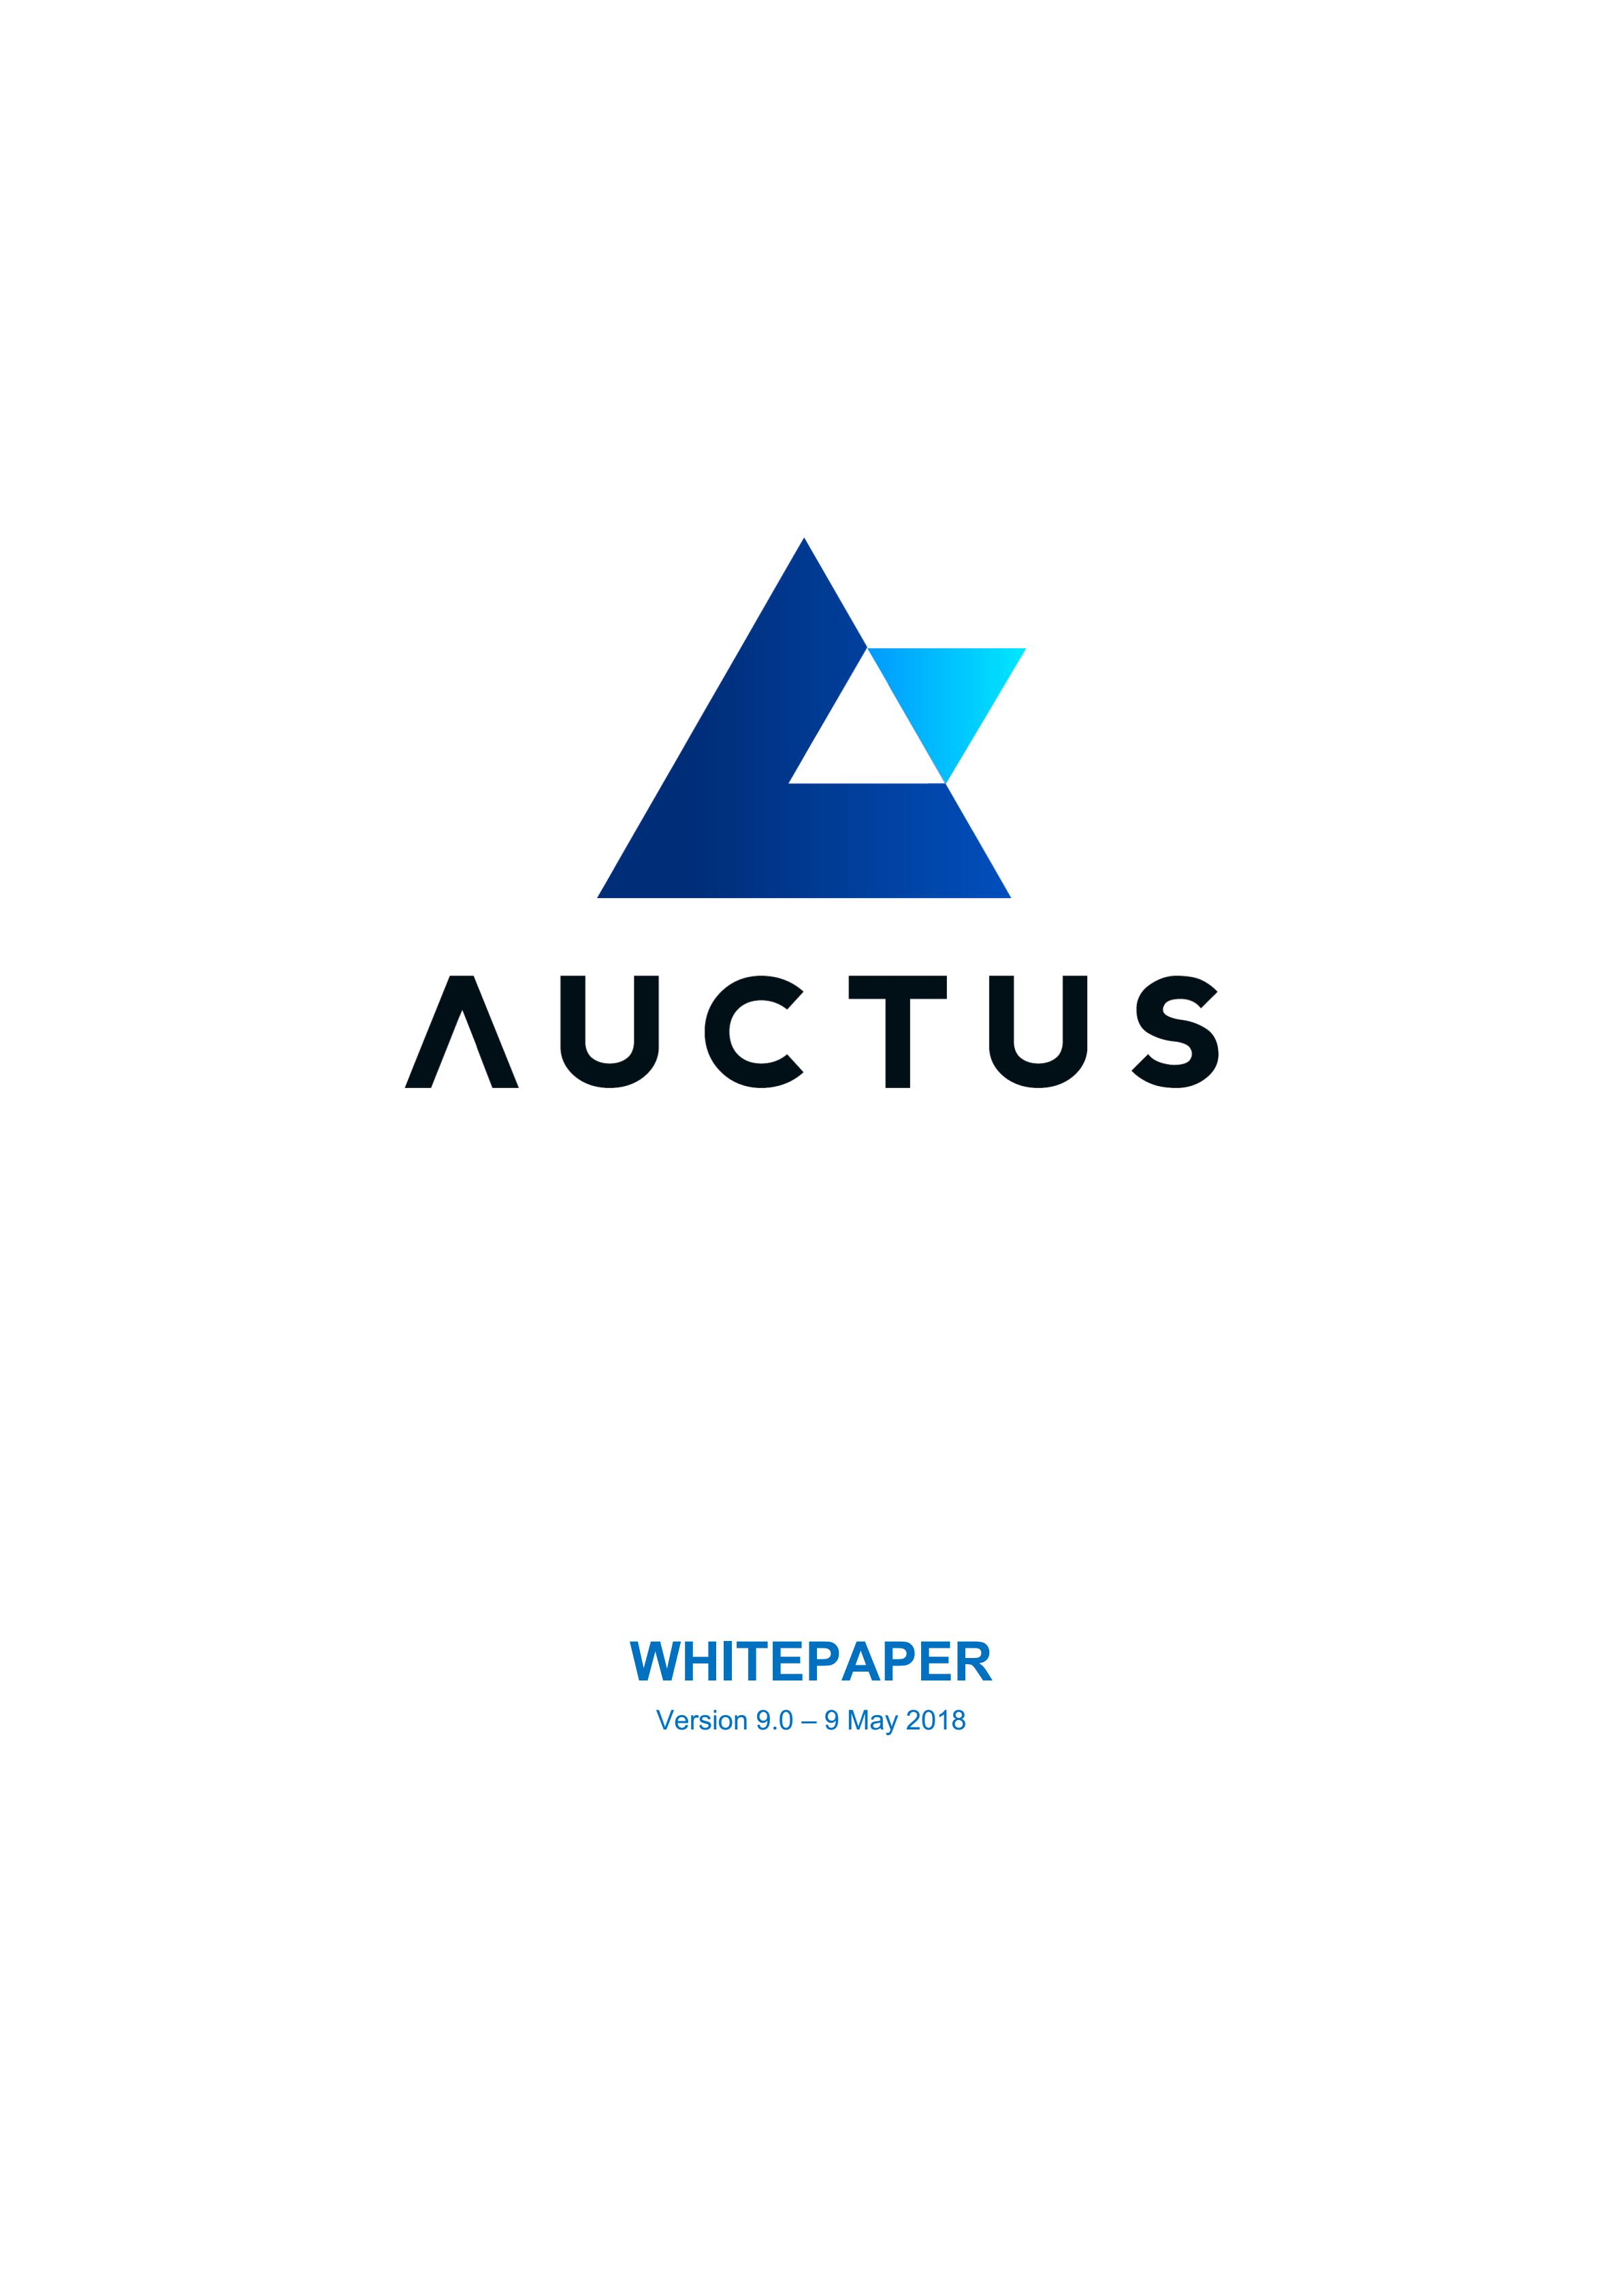 AUC_Auctus_Whitepaper_00.jpg